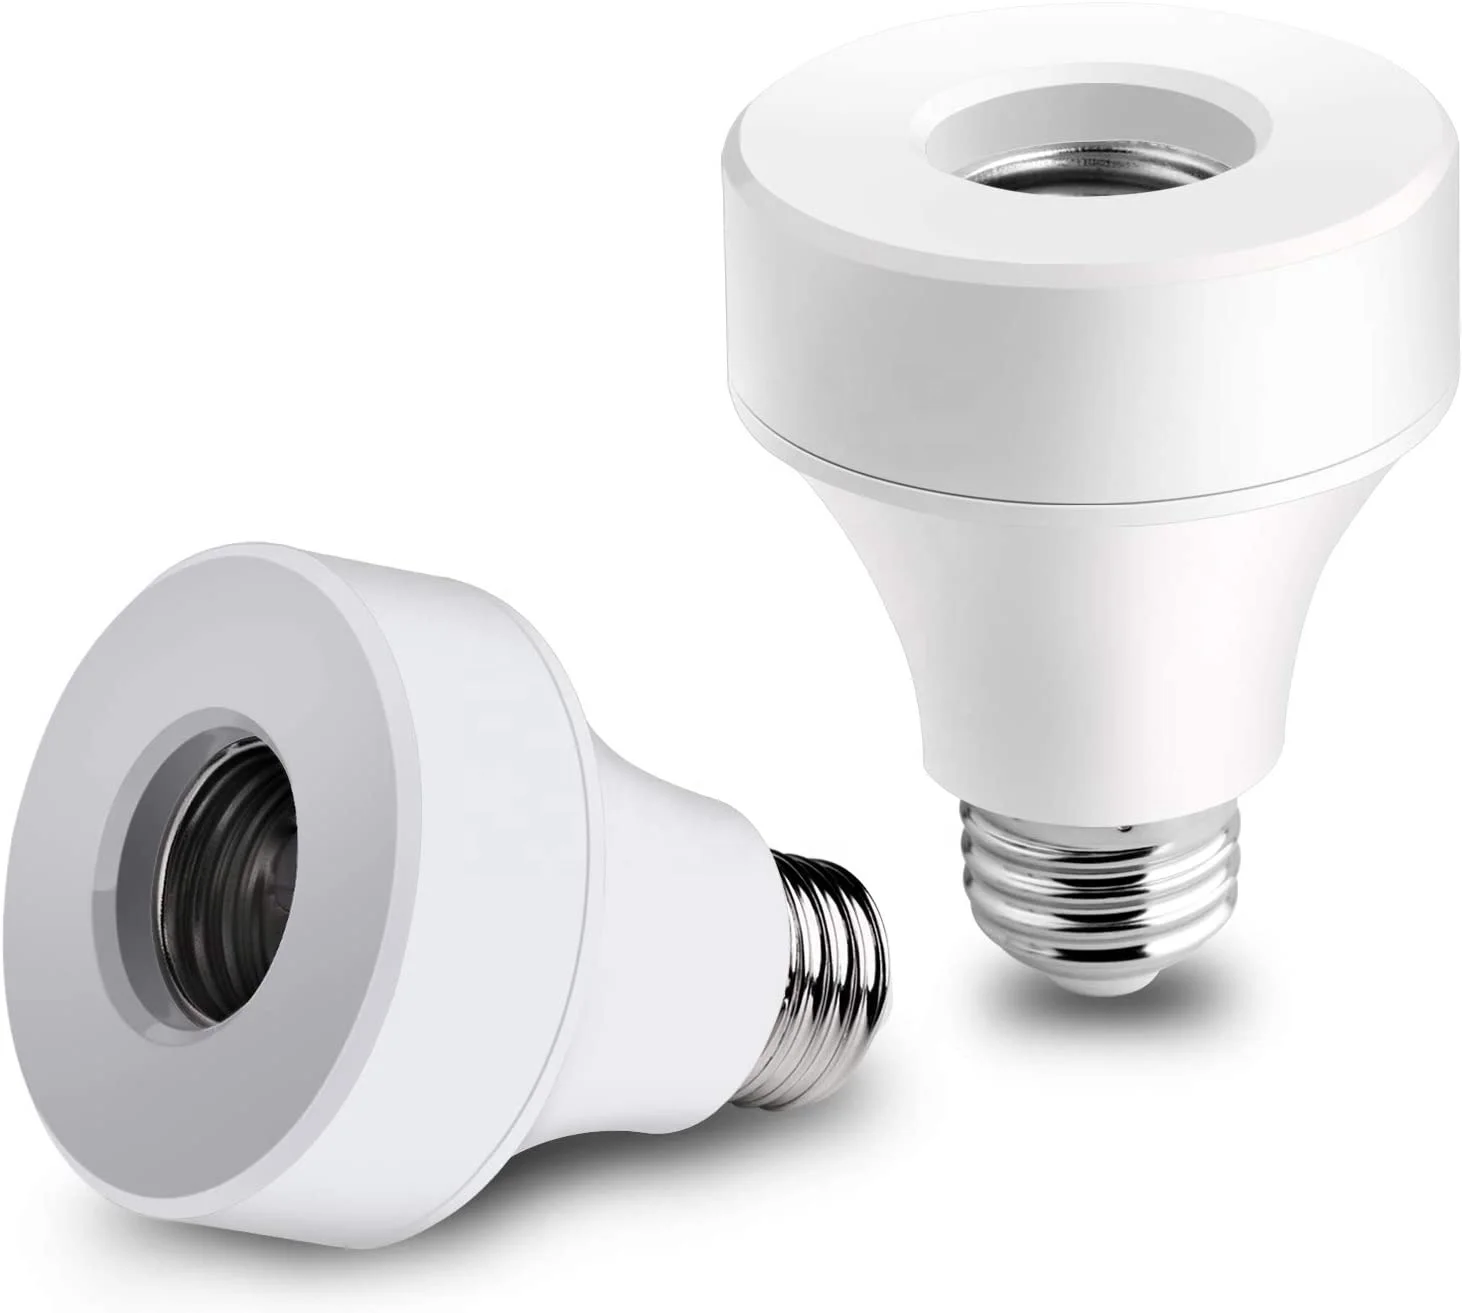 E26/e27 Led Light Bulbs Adapter Base Converter Timer Holder Smart Wifi Bulb Socket - Buy Smart Wifi Bulb Socket,Led Light Bulbs Adapter,Led Light Bulbs Base Product on